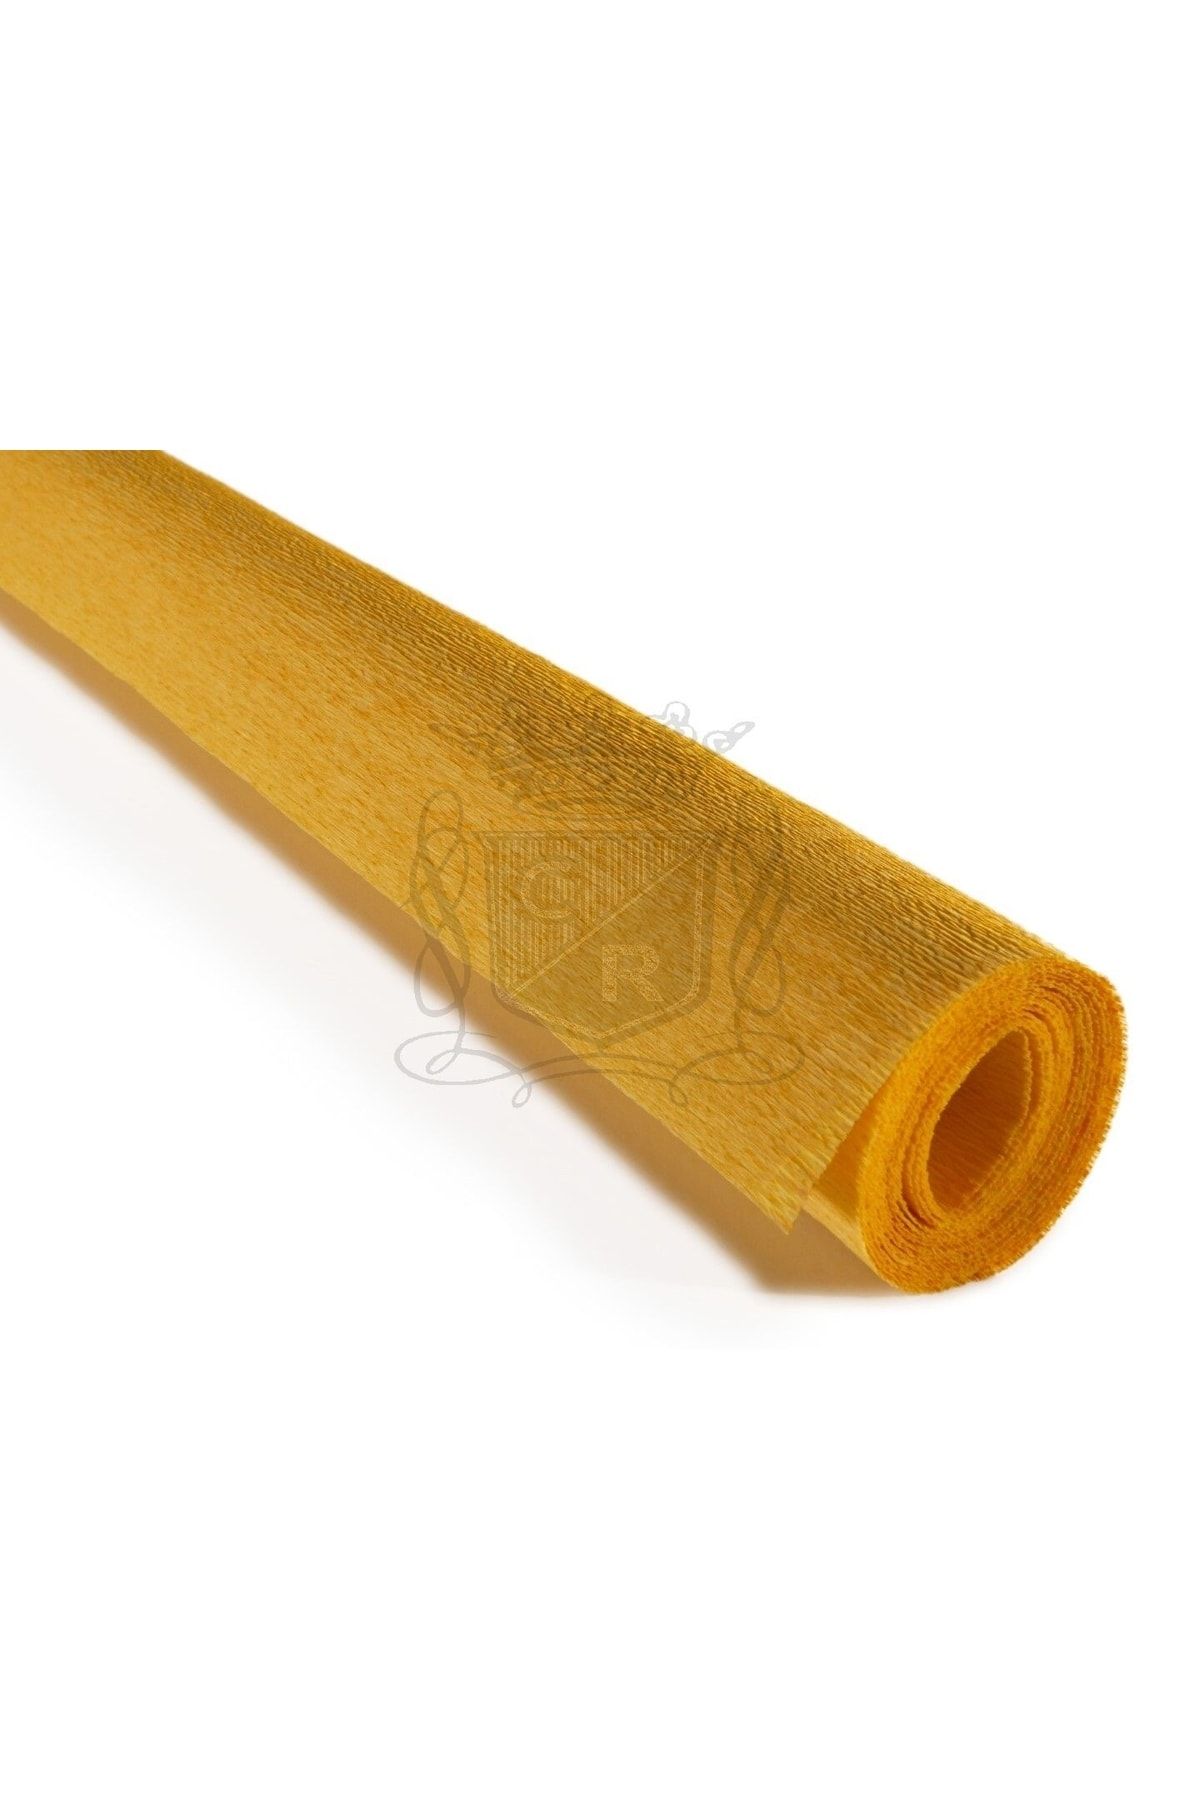 roco paper Italyan Krapon Kağıdı No:370 - Yumurta Sarı - Tuscany Yellow 90 Gr. 50x150 Cm